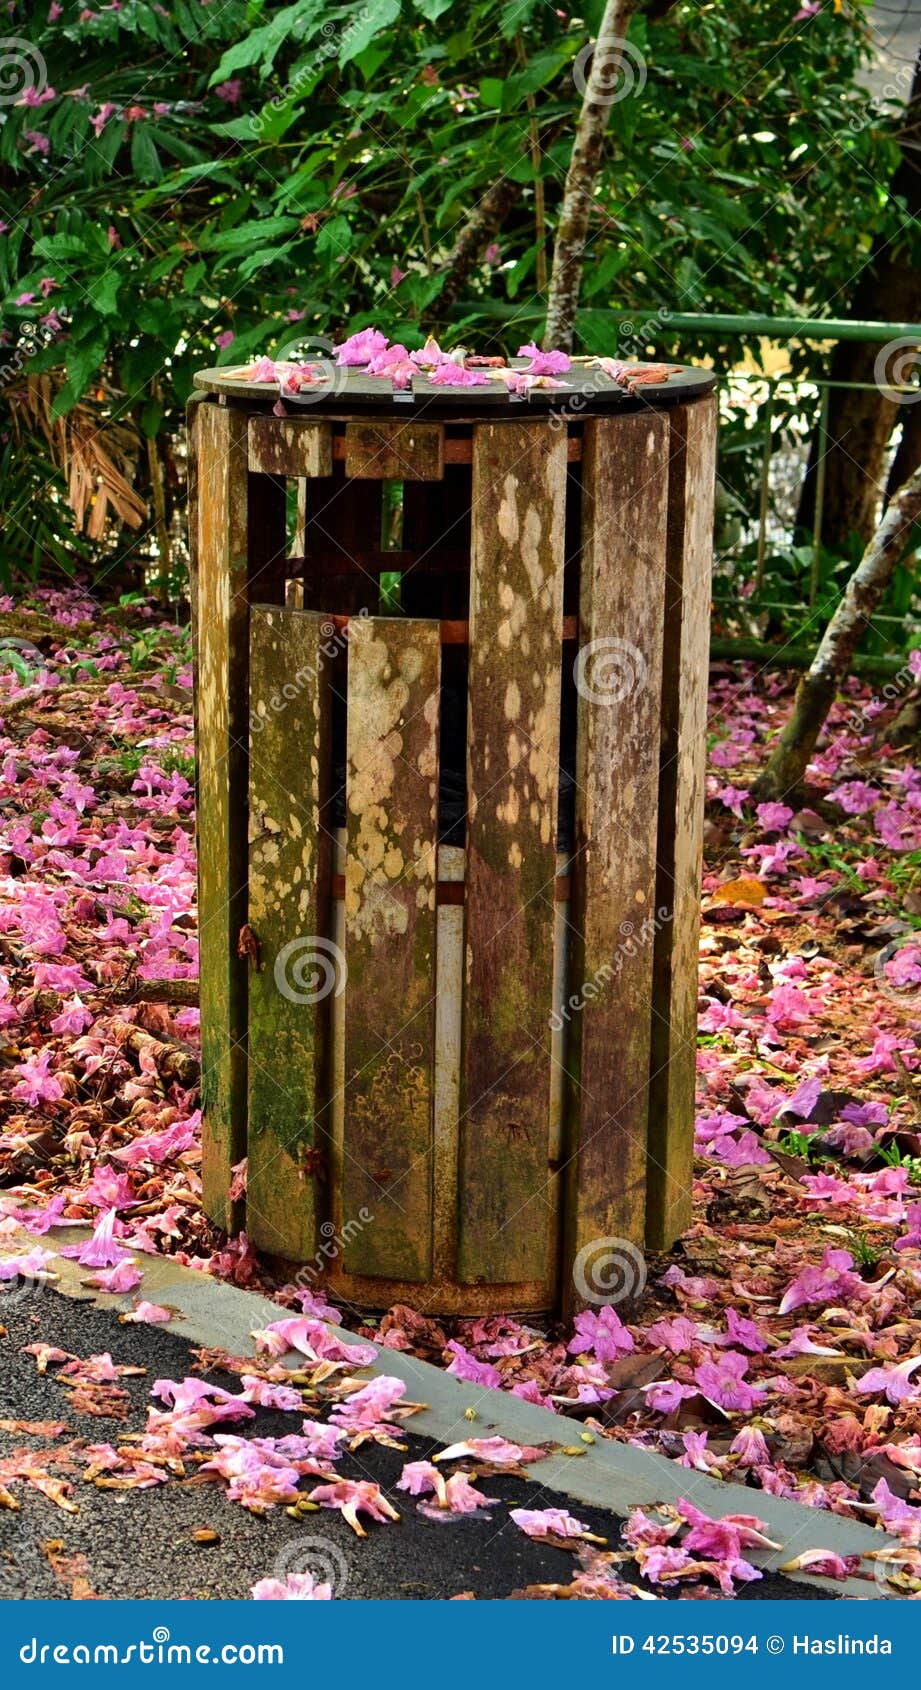 wooden dustbin